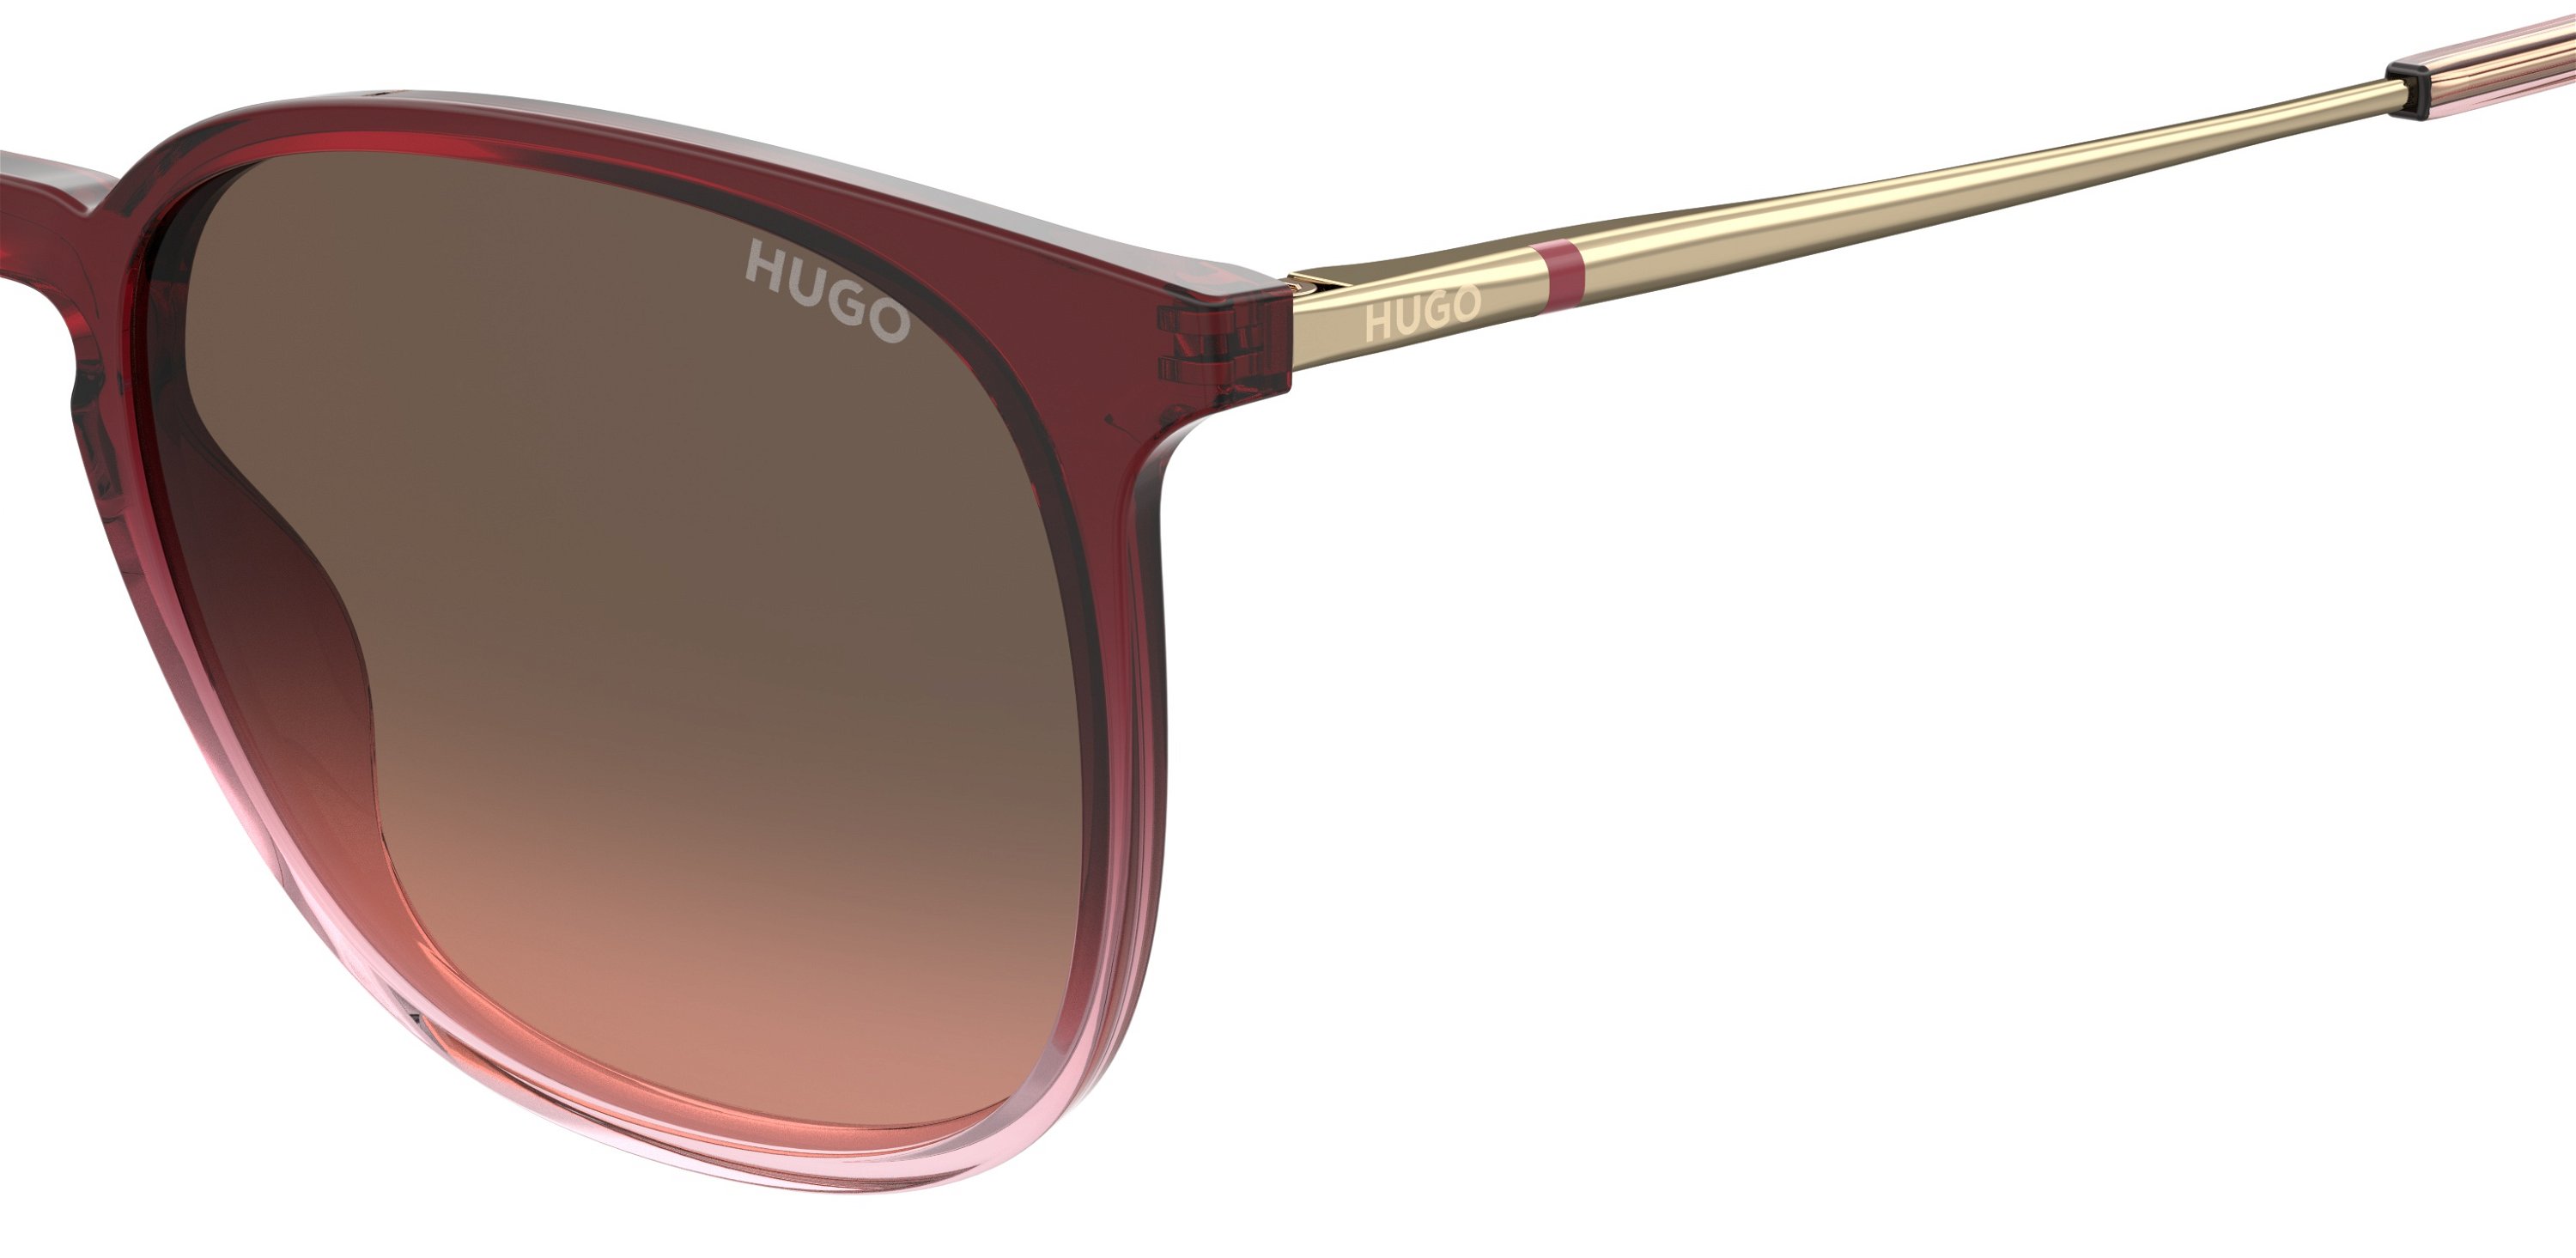 Das Bild zeigt die Sonnenbrille HG1292/S 0T5 von der Marke Hugo in rot.